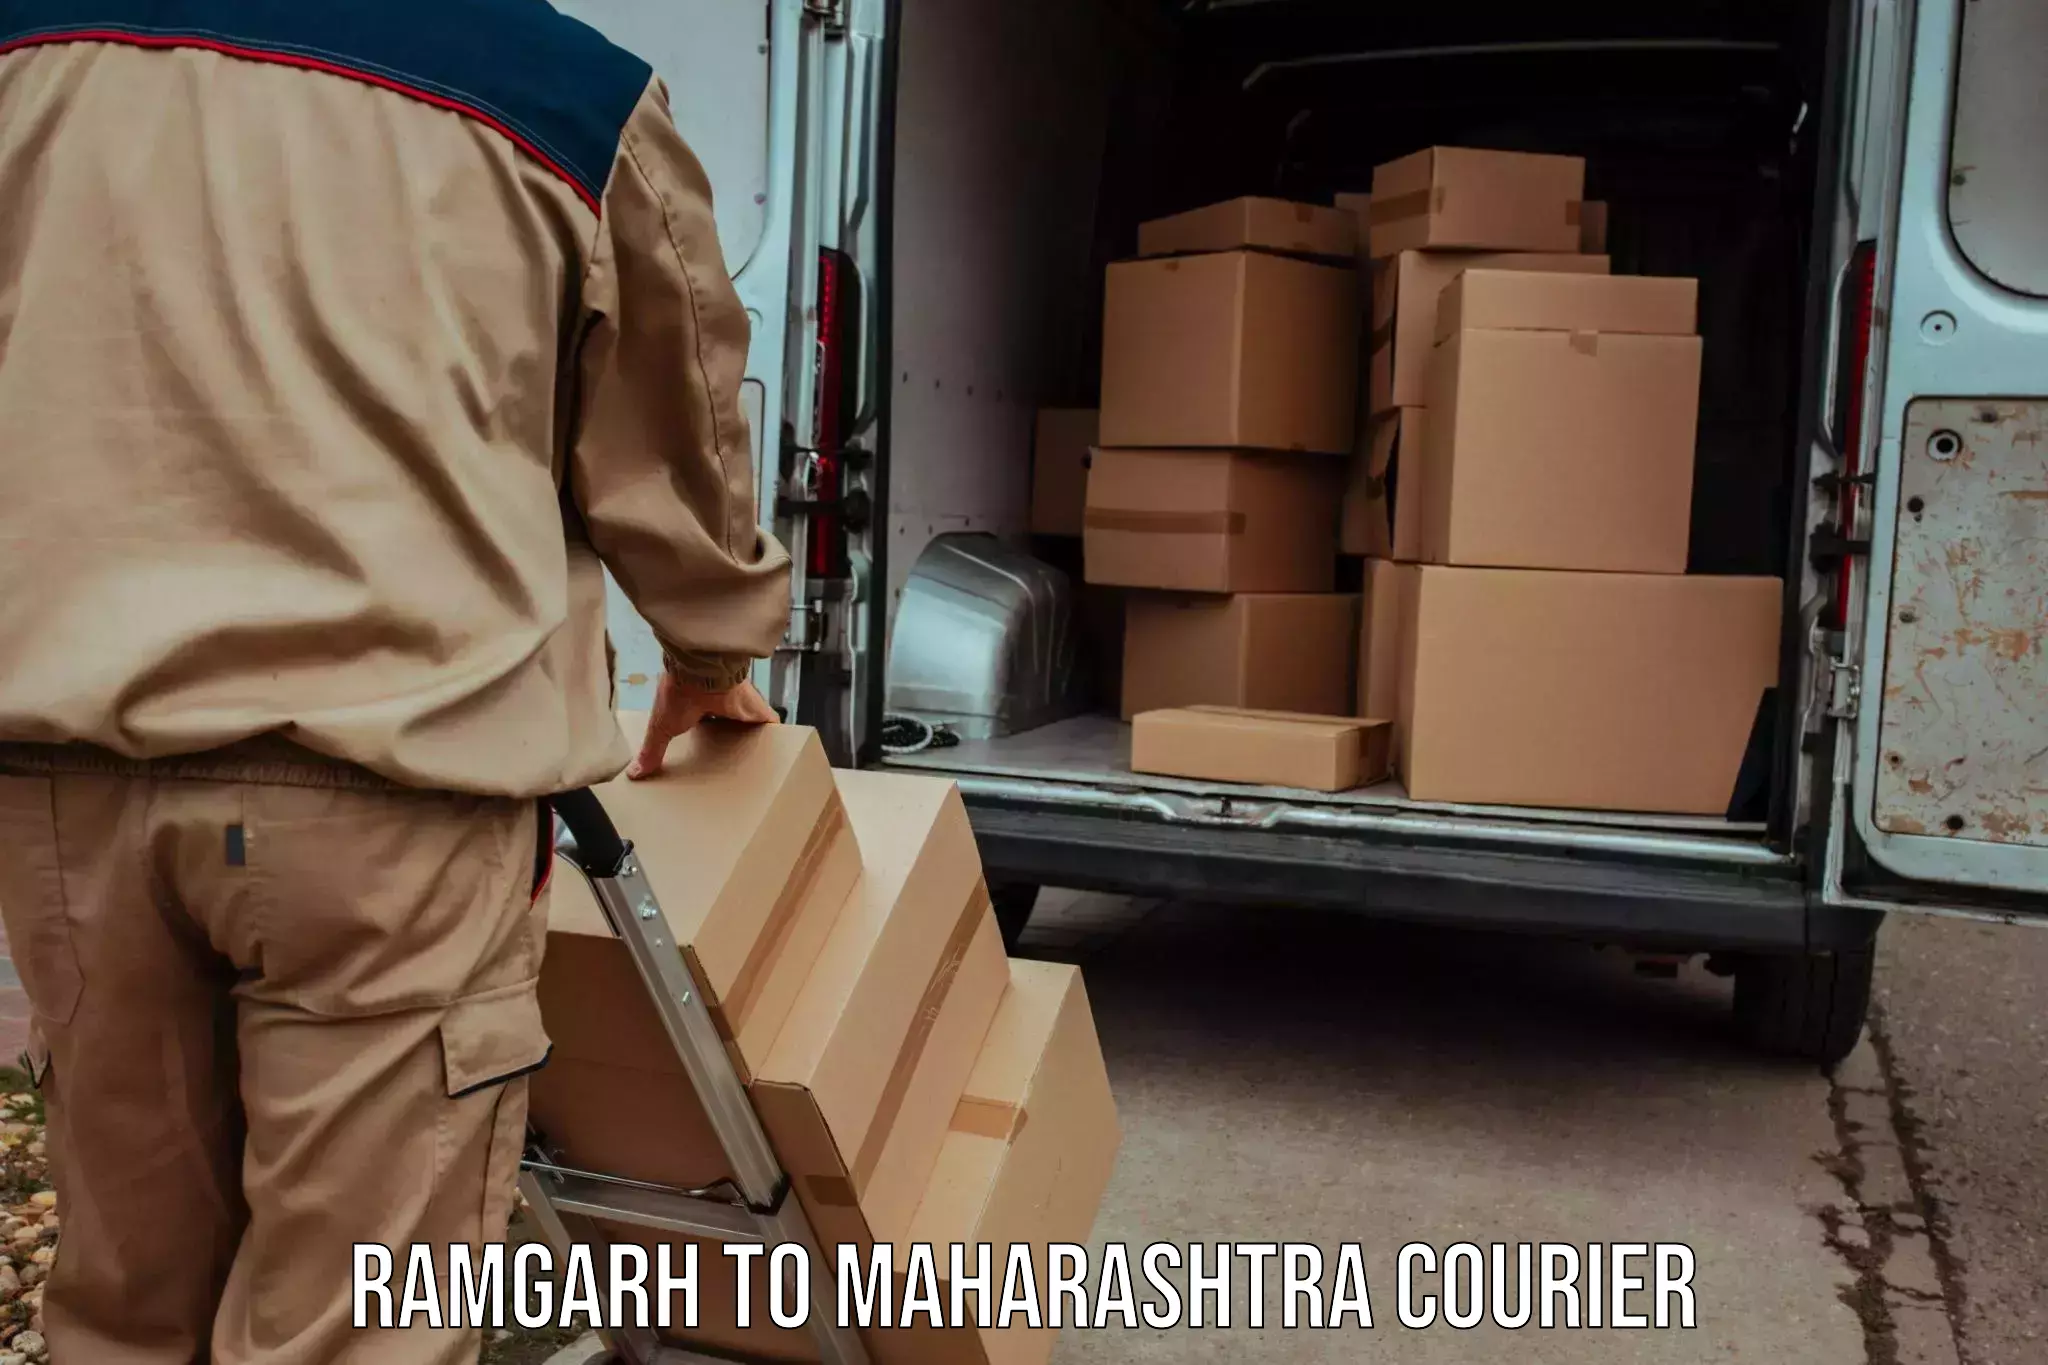 Holiday shipping services Ramgarh to Karanja